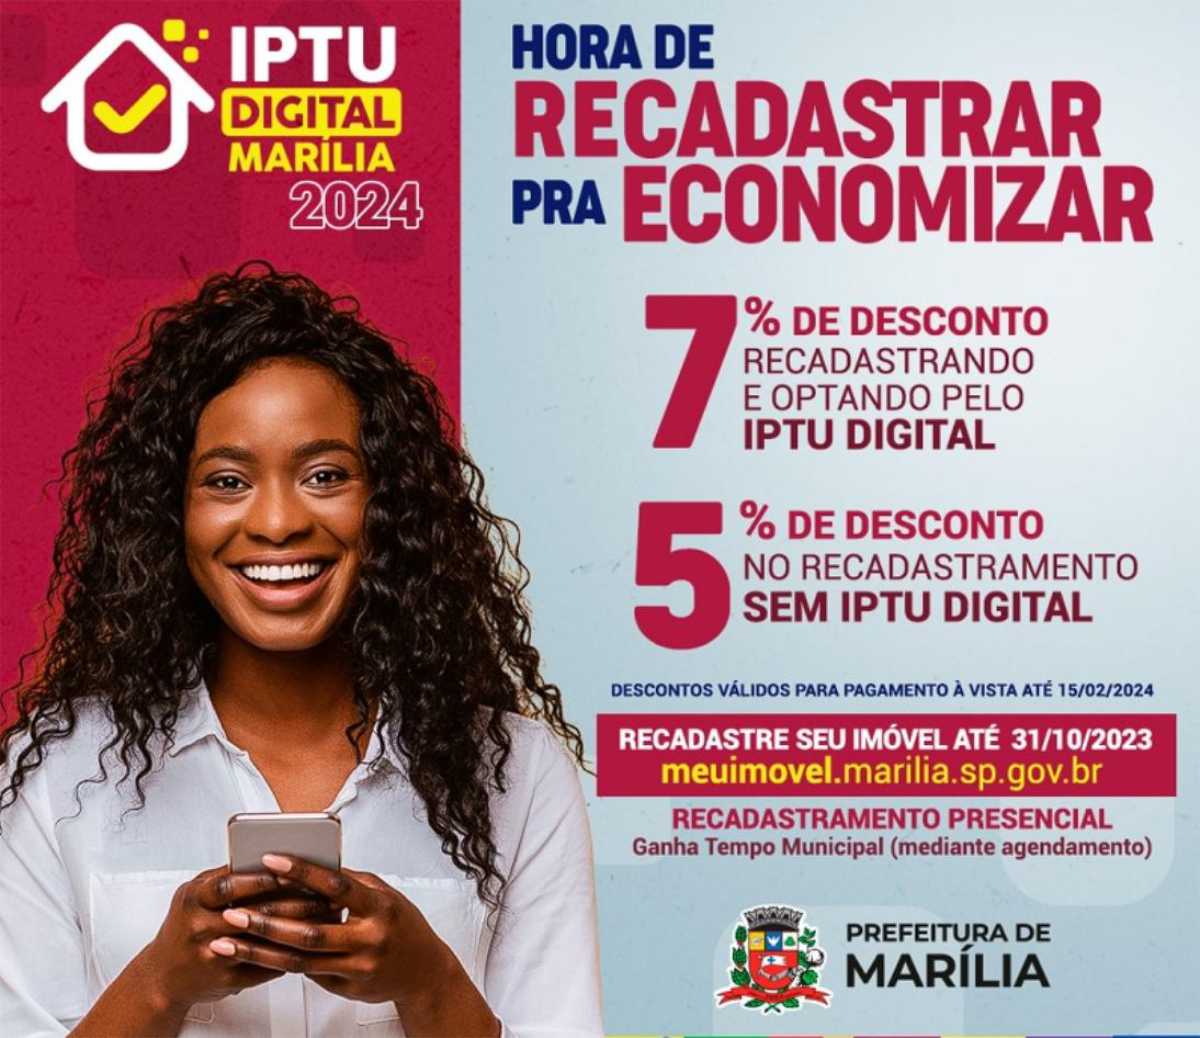 IPTU Marília 2024